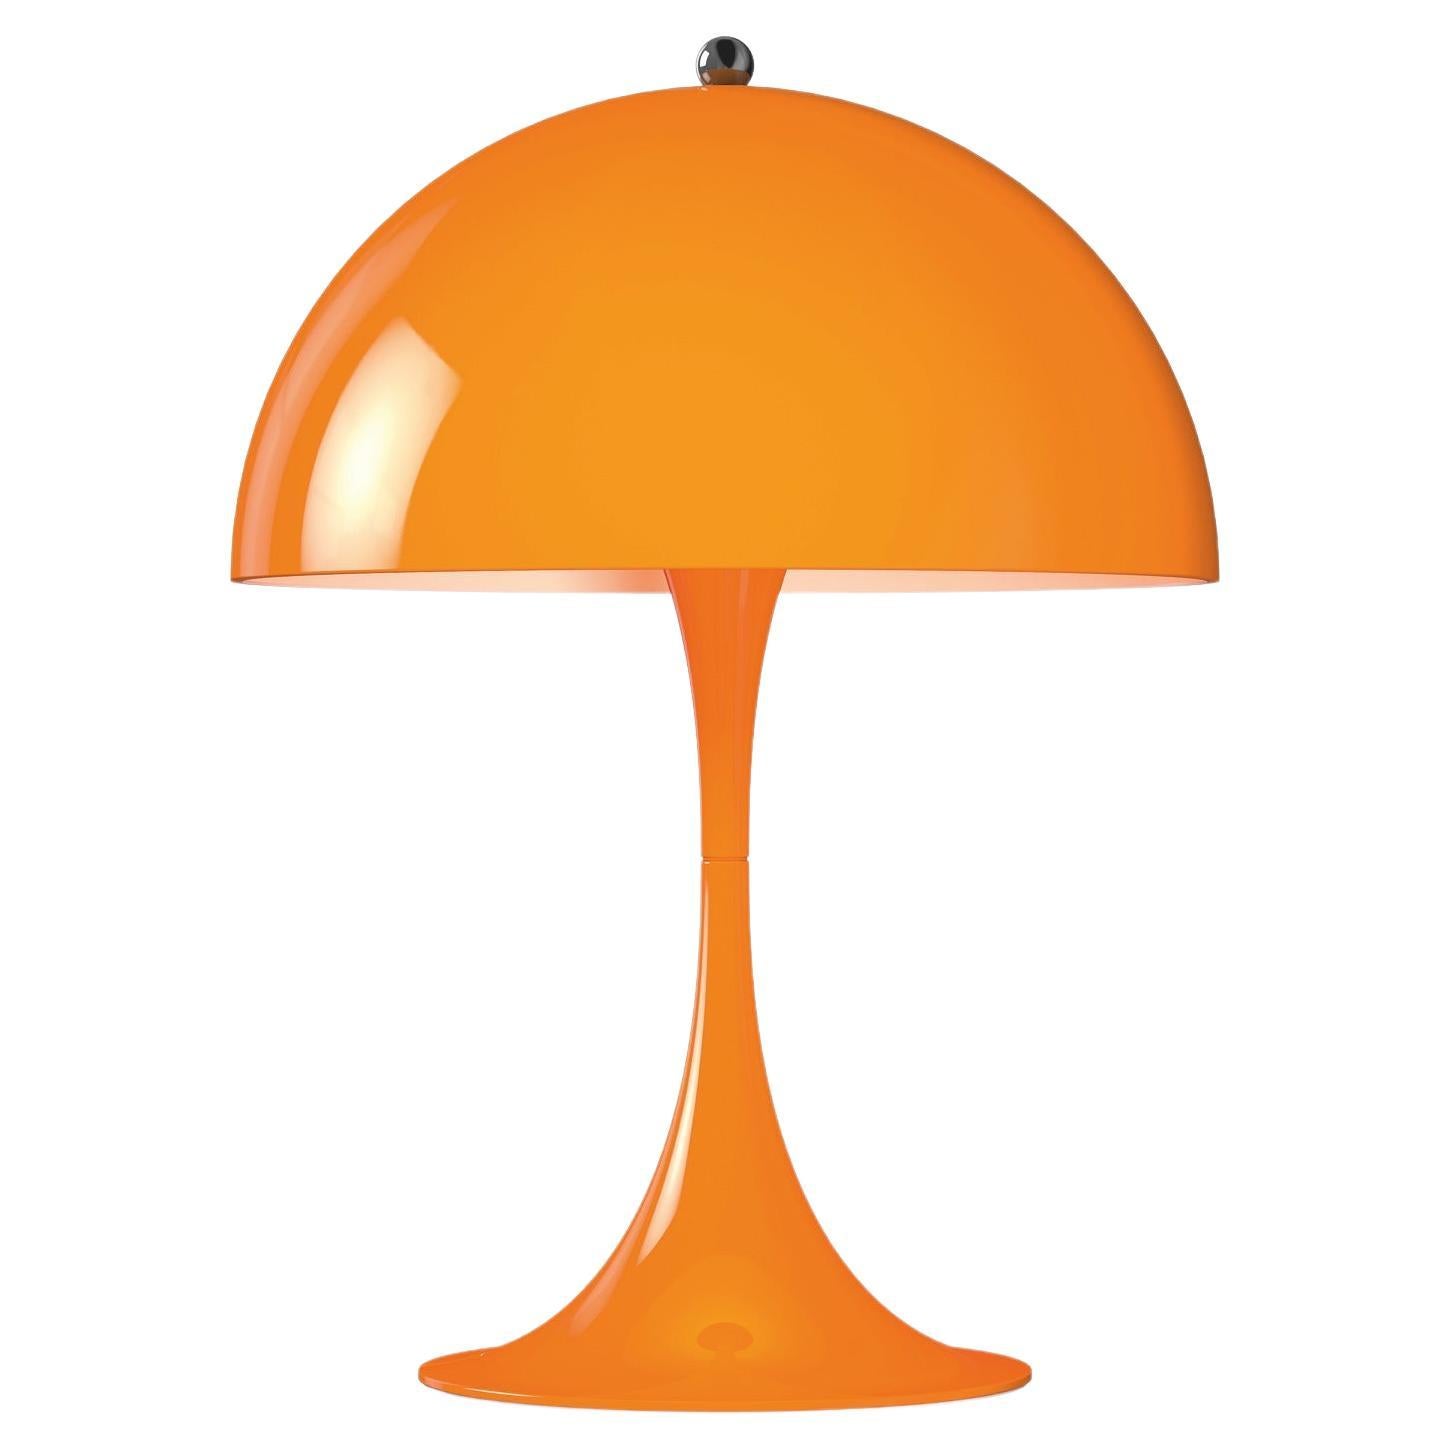 Louis Poulsen Panthella 250 Table Lamp in Orange by Verner Panton